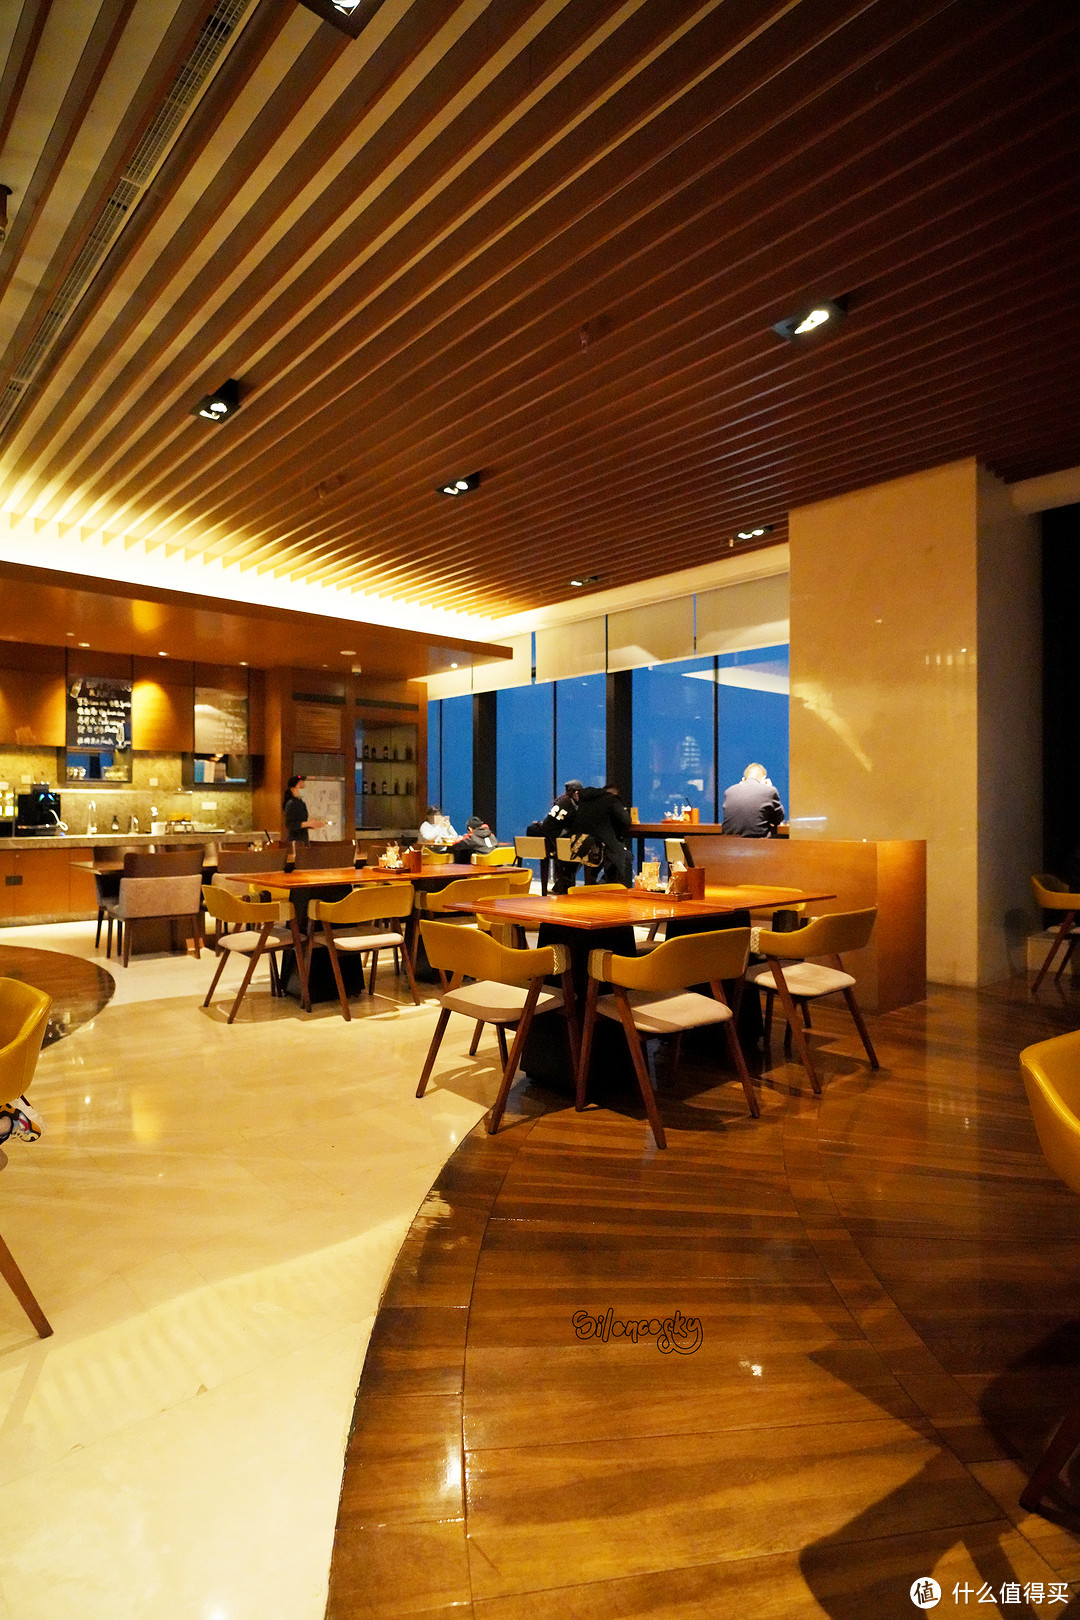 在城市的最高点,吃一碗排名no1的黄鱼面~无锡苏宁凯悦酒店:麺餐厅